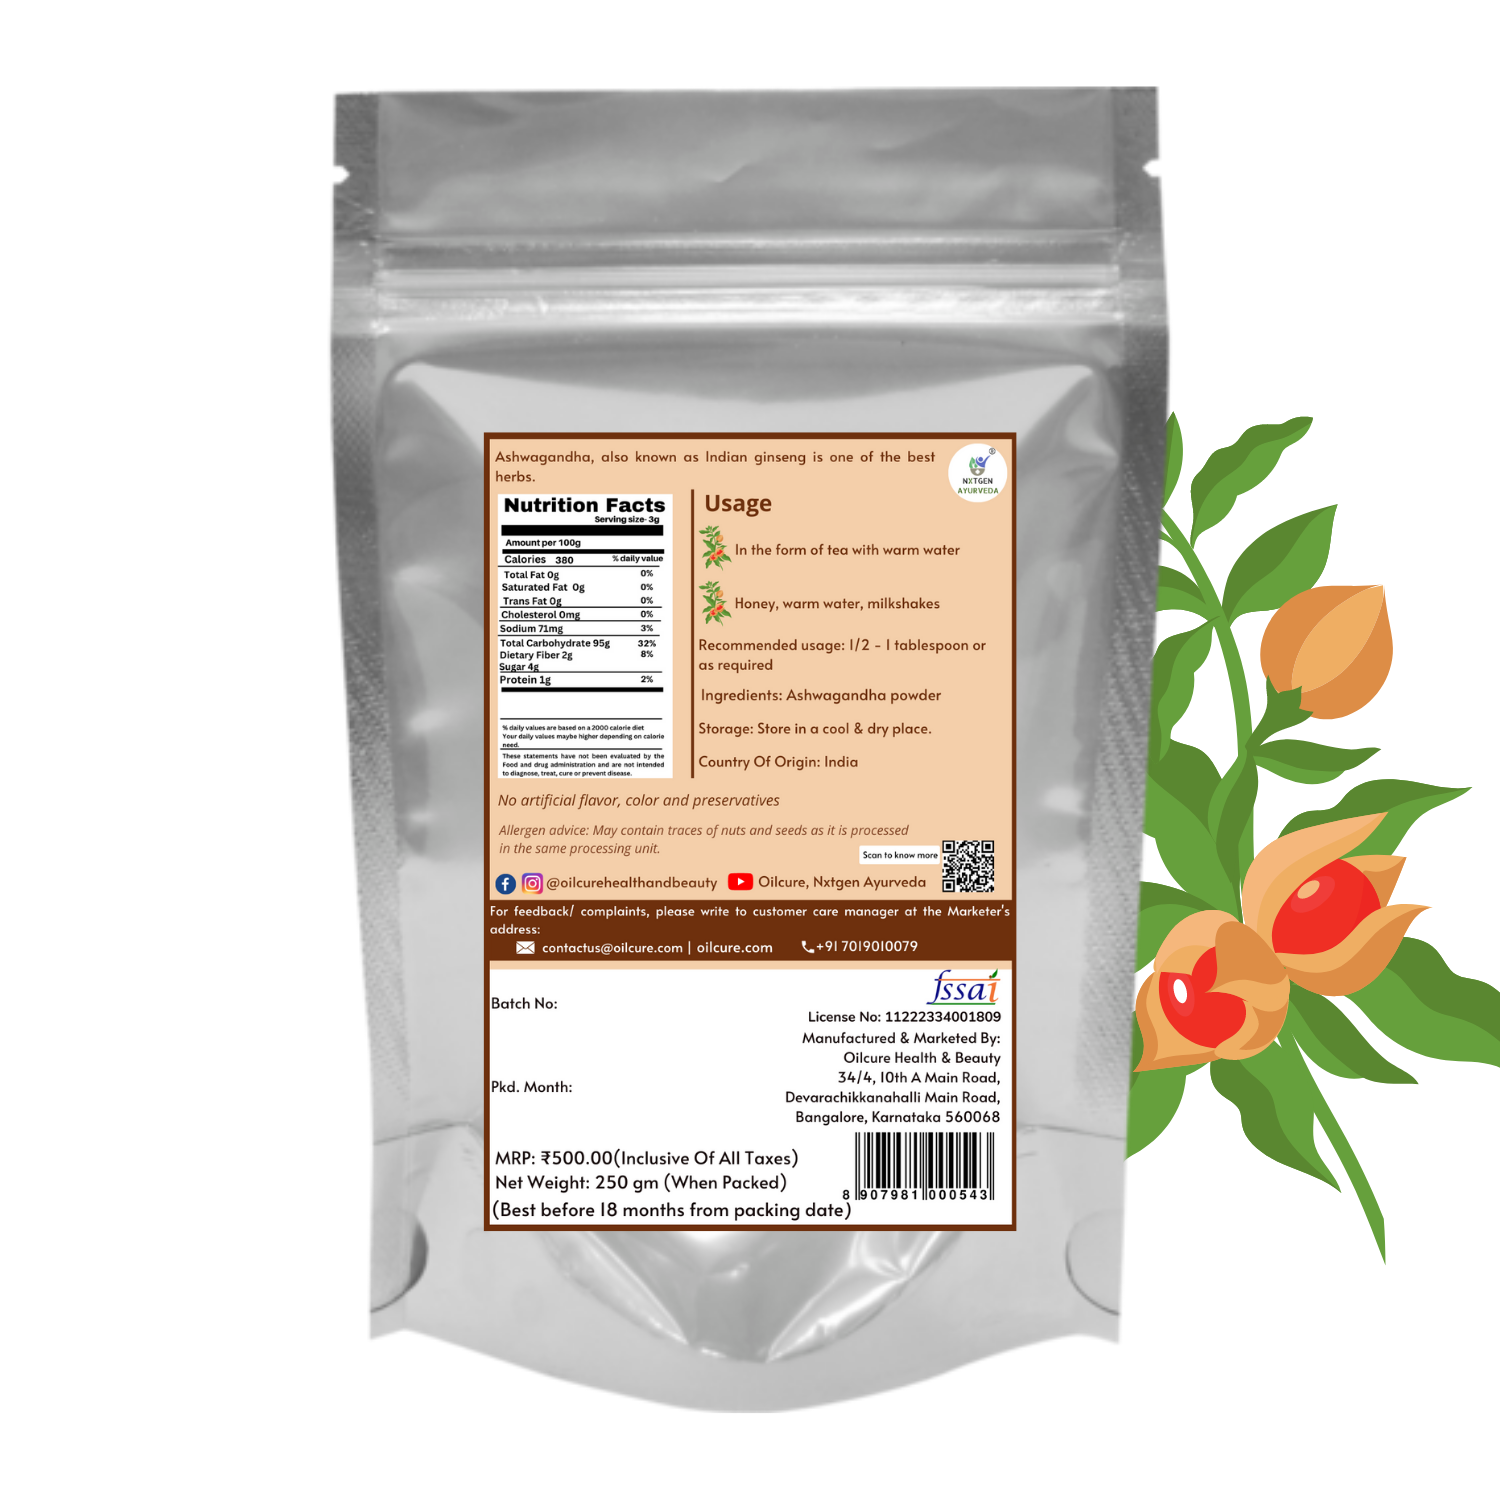 Nxtgen Ayurveda Ashwagandha Powder - 250 gms (Pack of 2)